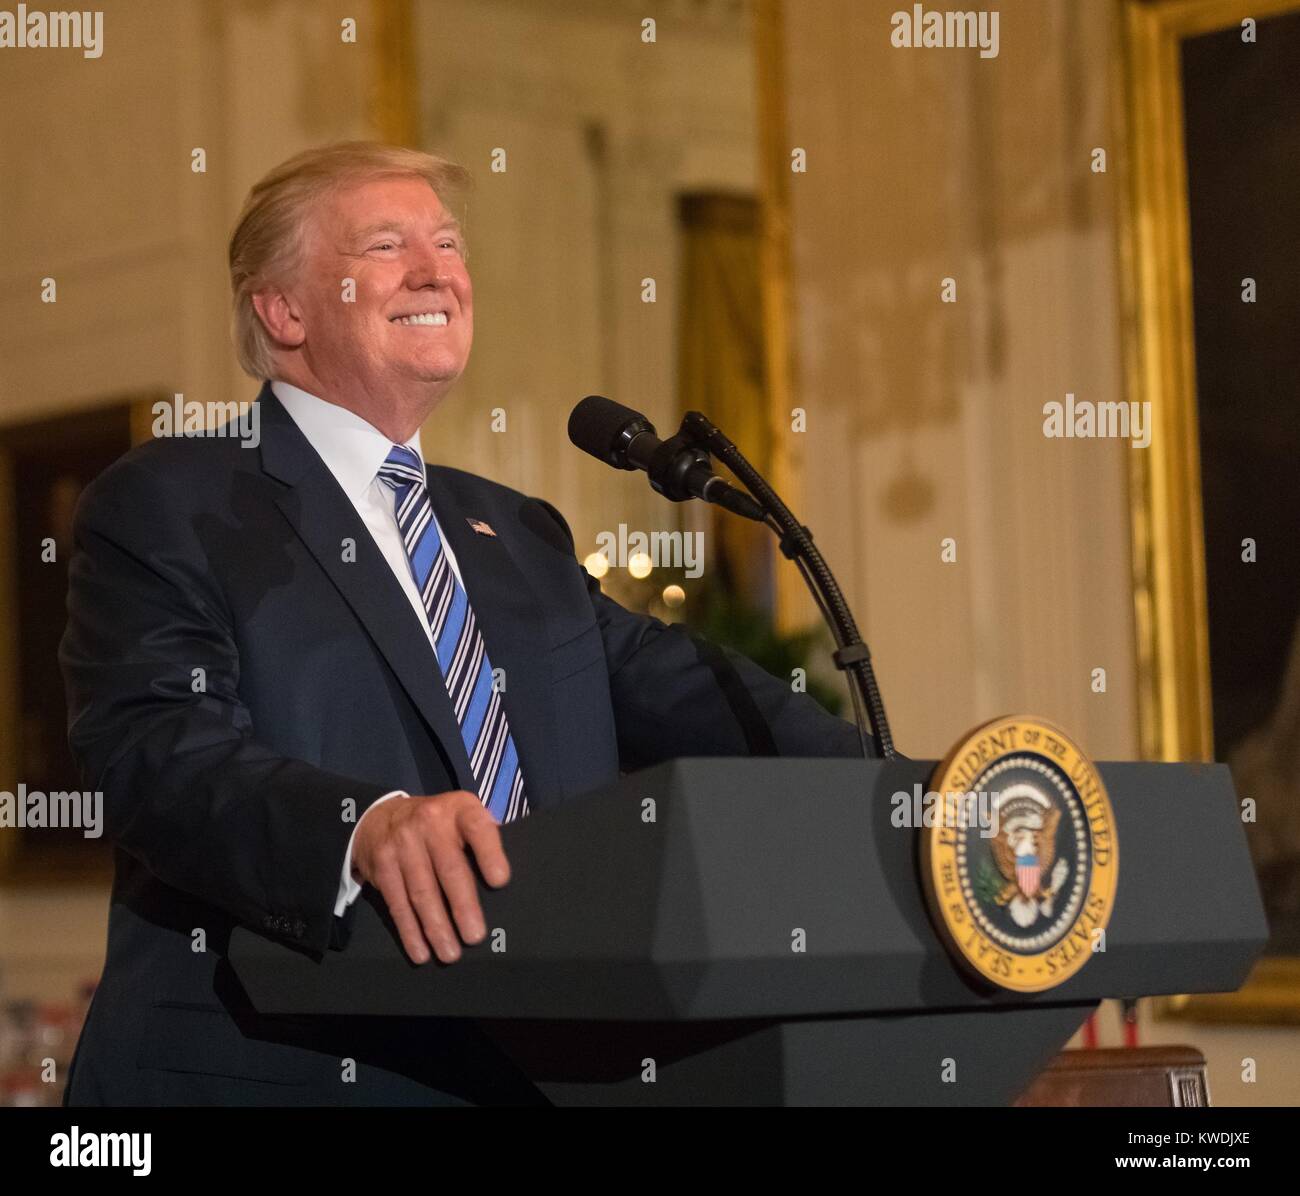 Präsident Donald Trump spricht im Weißen Haus Hergestellt in Amerika Showcase, 17. Juli 2017 (BSLOC 2017 19 10) Stockfoto